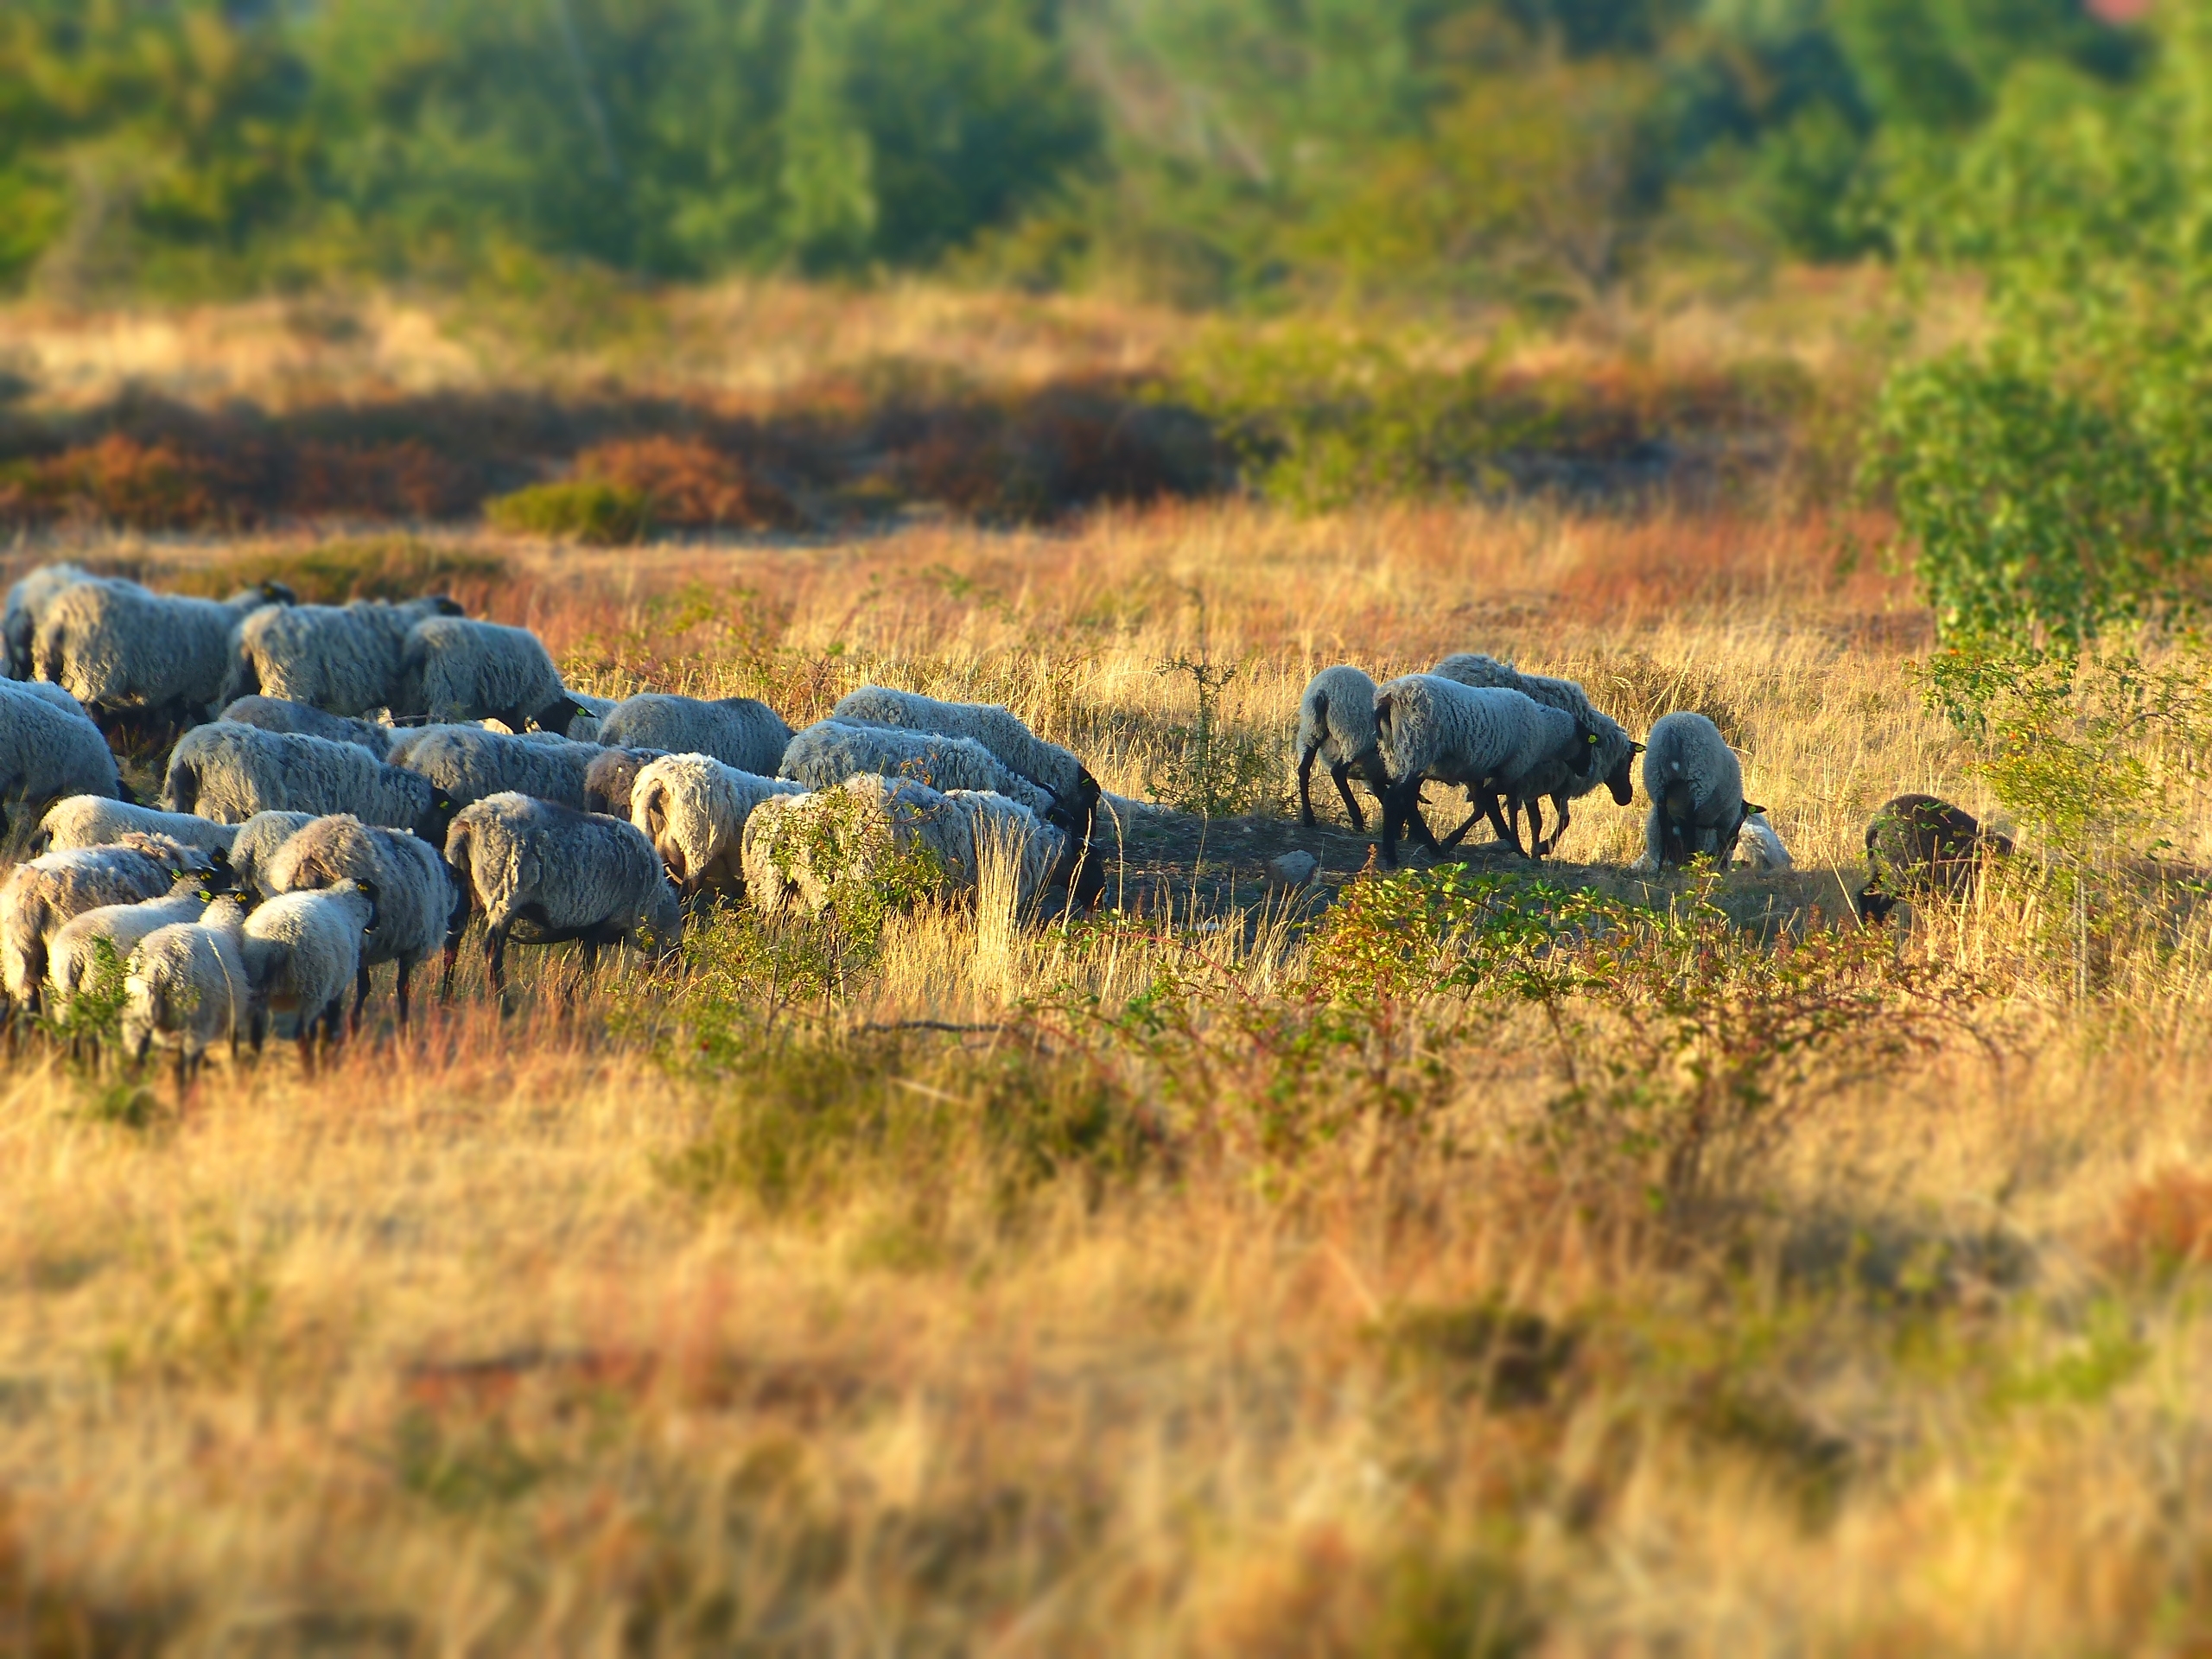 Vznik vřesovišť umožnila intenzivní pastva více druhů hospodářských zvířat, zejména ovcí, koz, krav a prasat. Dnes jen částečně simulovaná menším počtem ovcí a koz. Foto Martin Škorpík